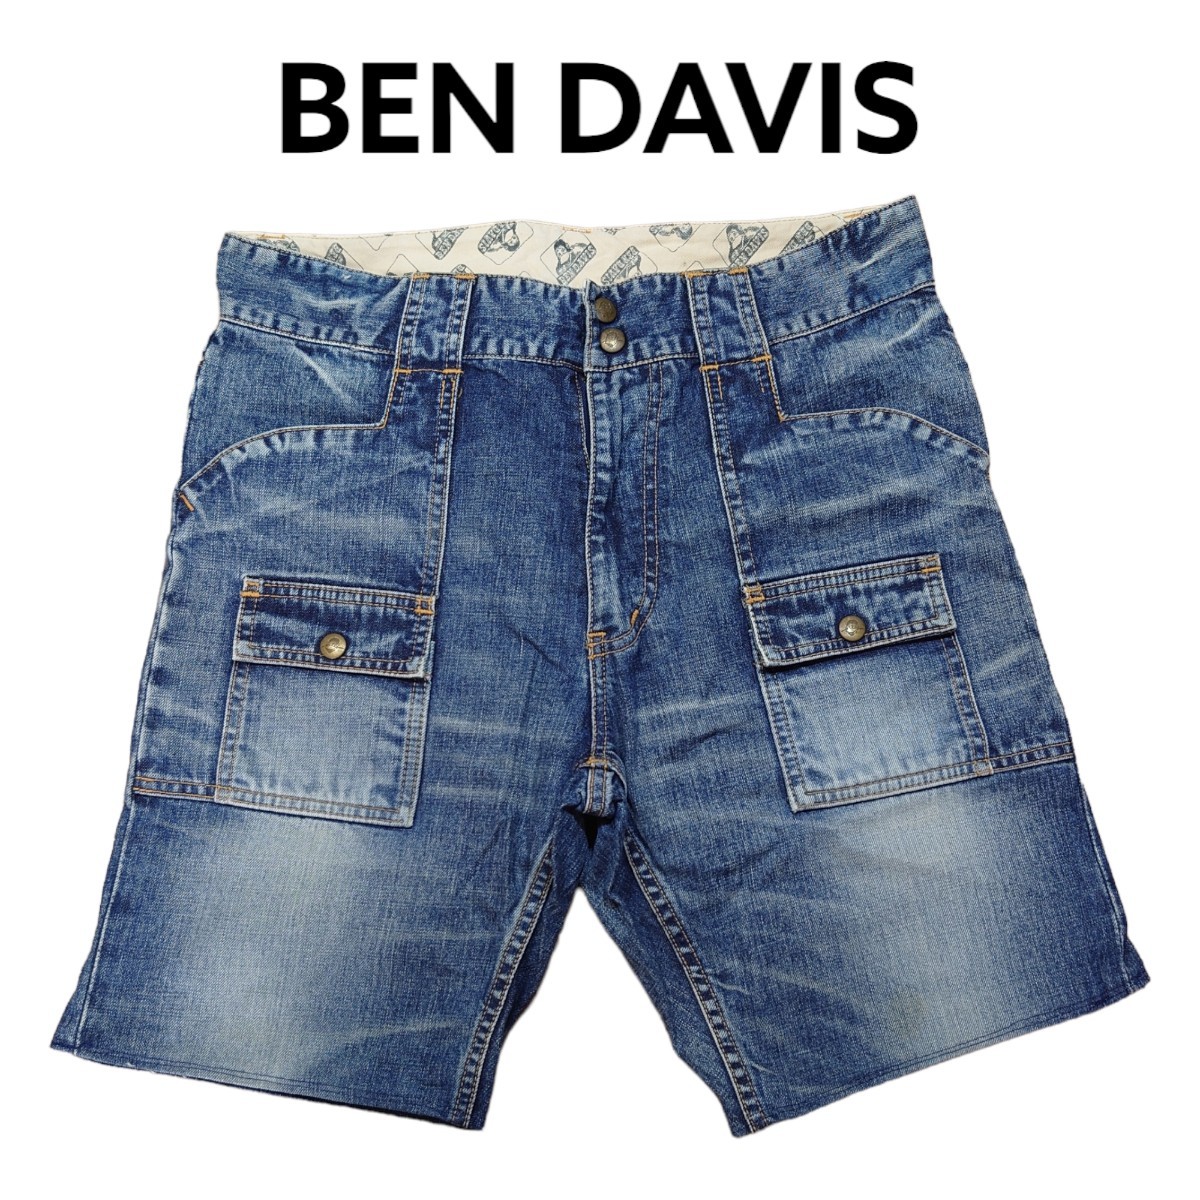 BEN DAVIS　 Denim   шорты  　... день  ...　 укороченные брюки 　 бу одежда 